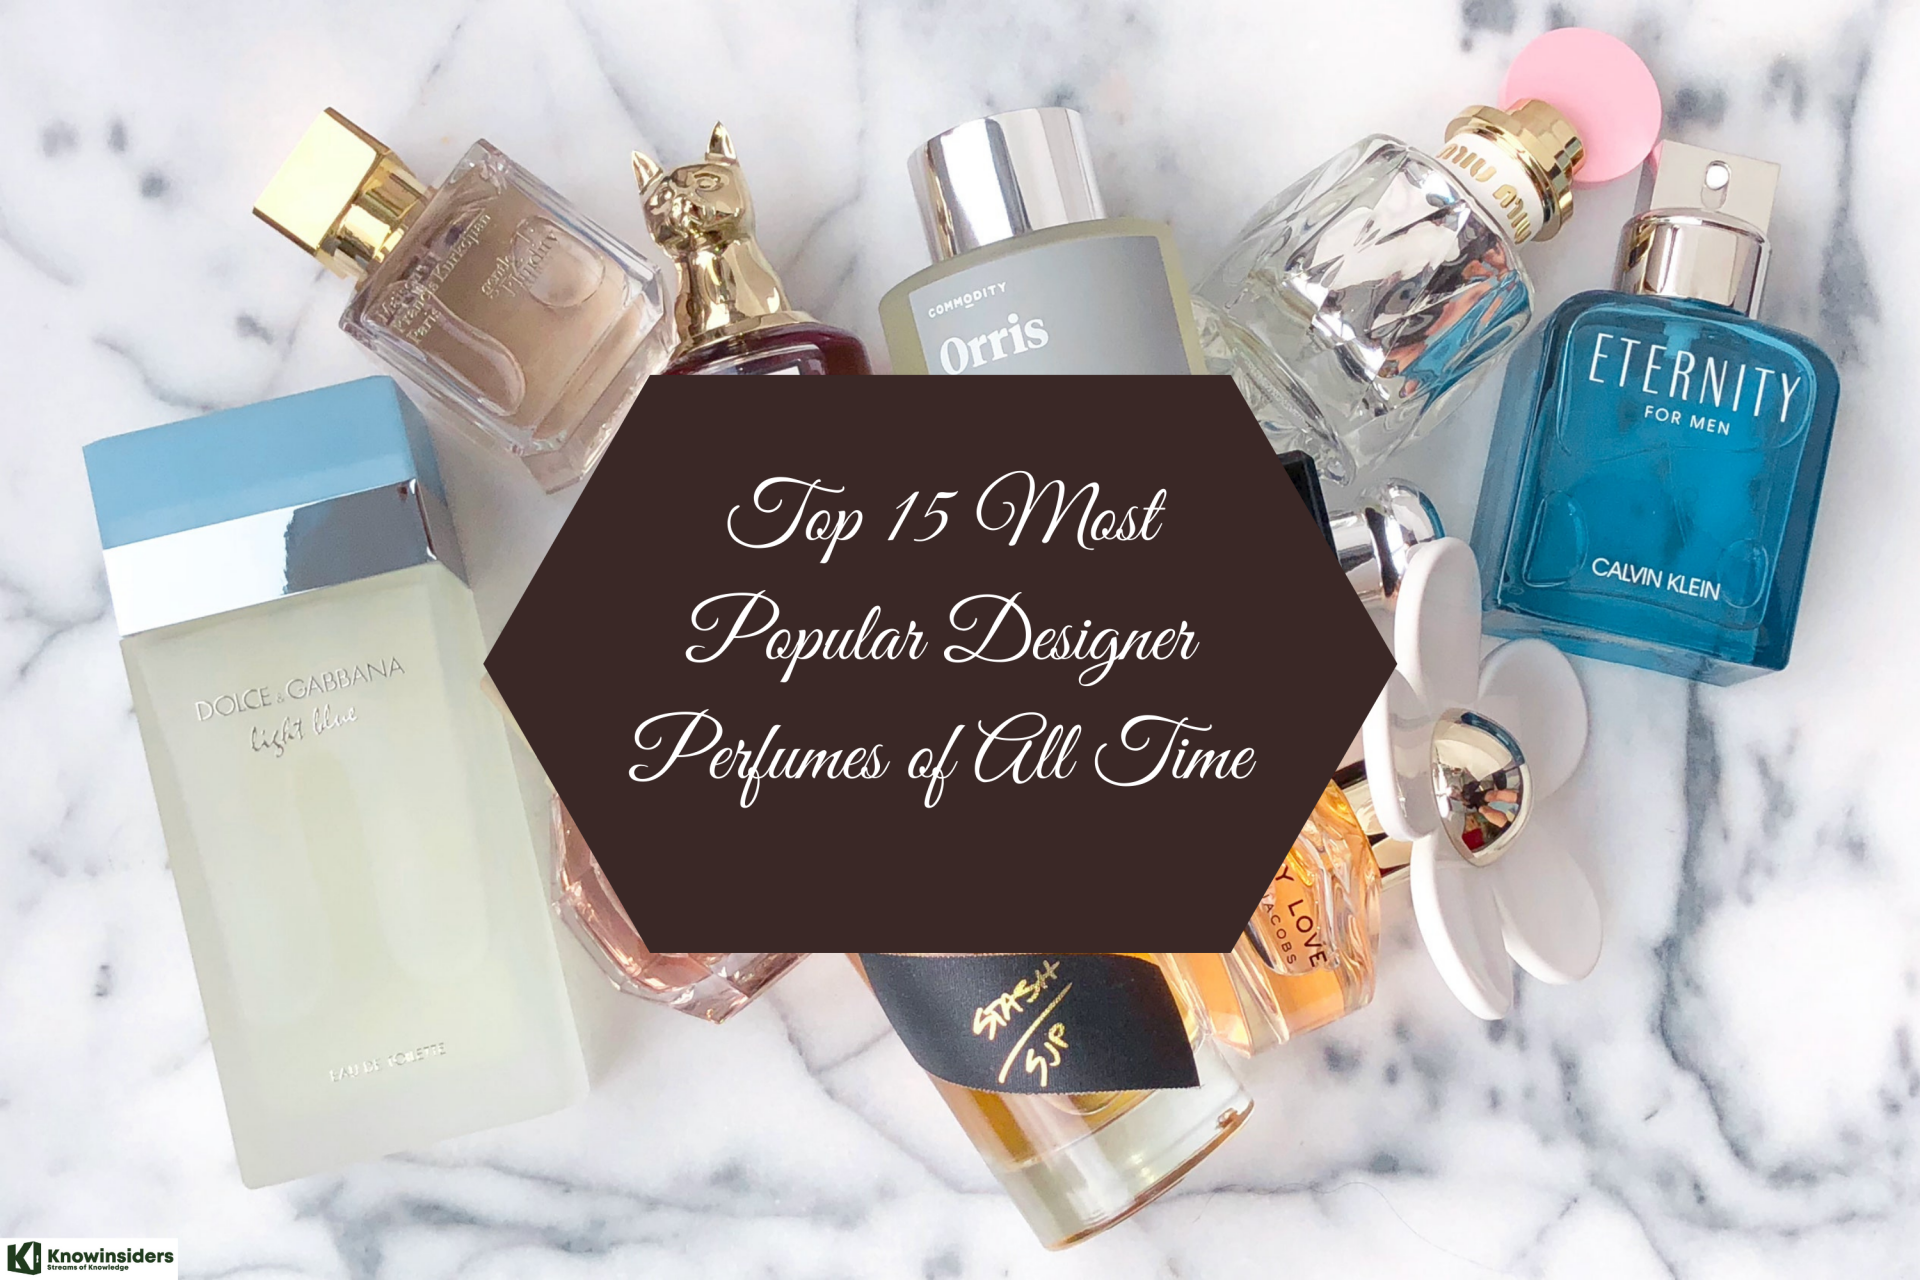 Top 15 Most Popular Designer Fragrances of All Time